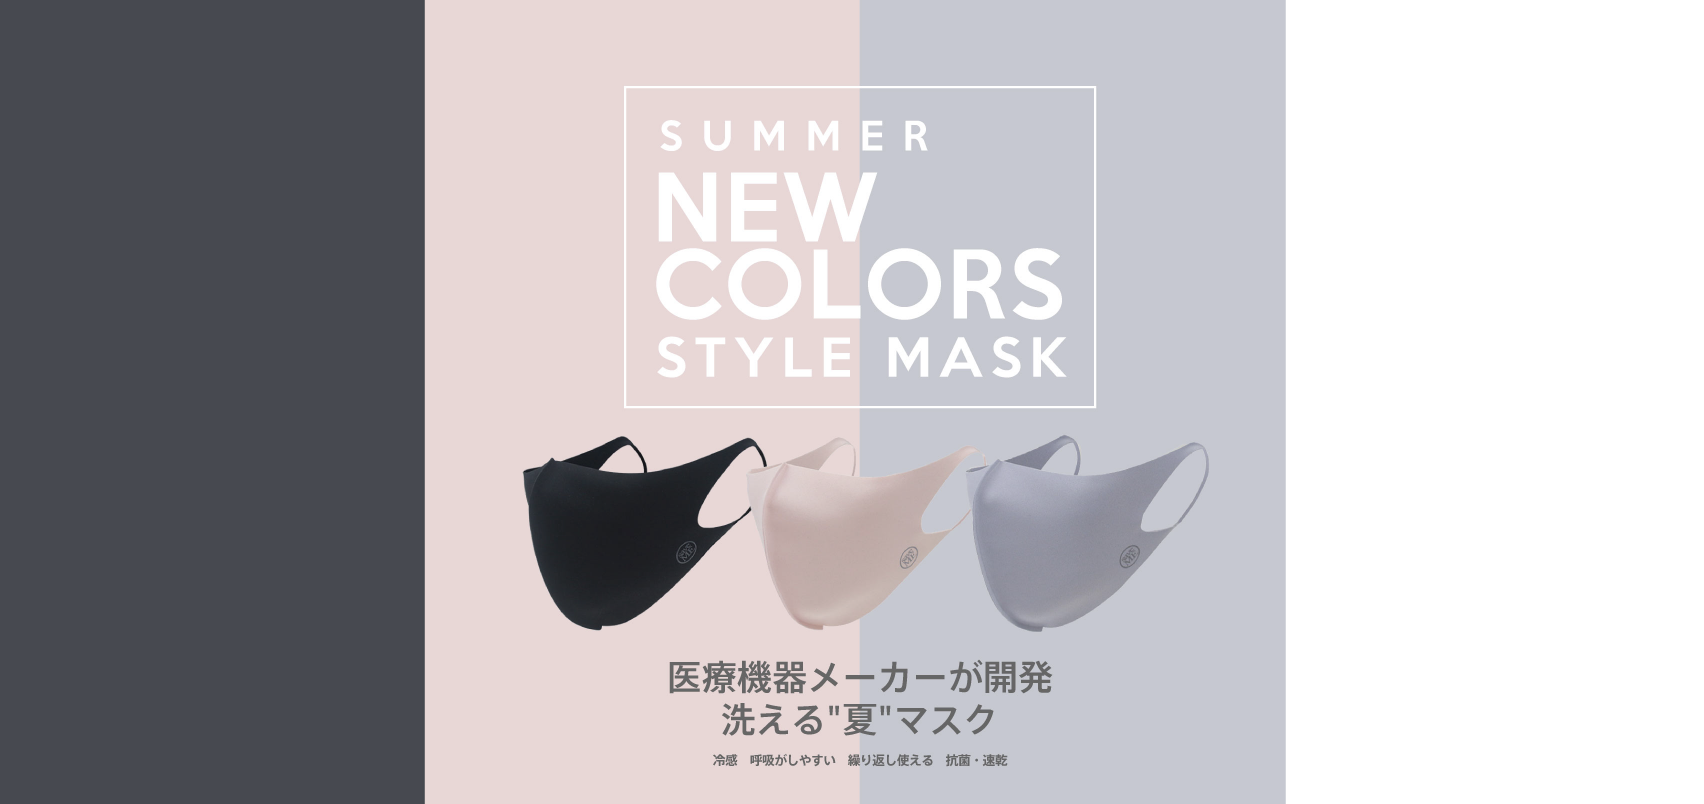 3万枚即完売 医療機器メーカーが開発した高機能立体マスクに ブラックとアクアグレーが新登場 これからの季節に嬉しい冷感接触機能付き 株式会社 Nmt Japanのプレスリリース